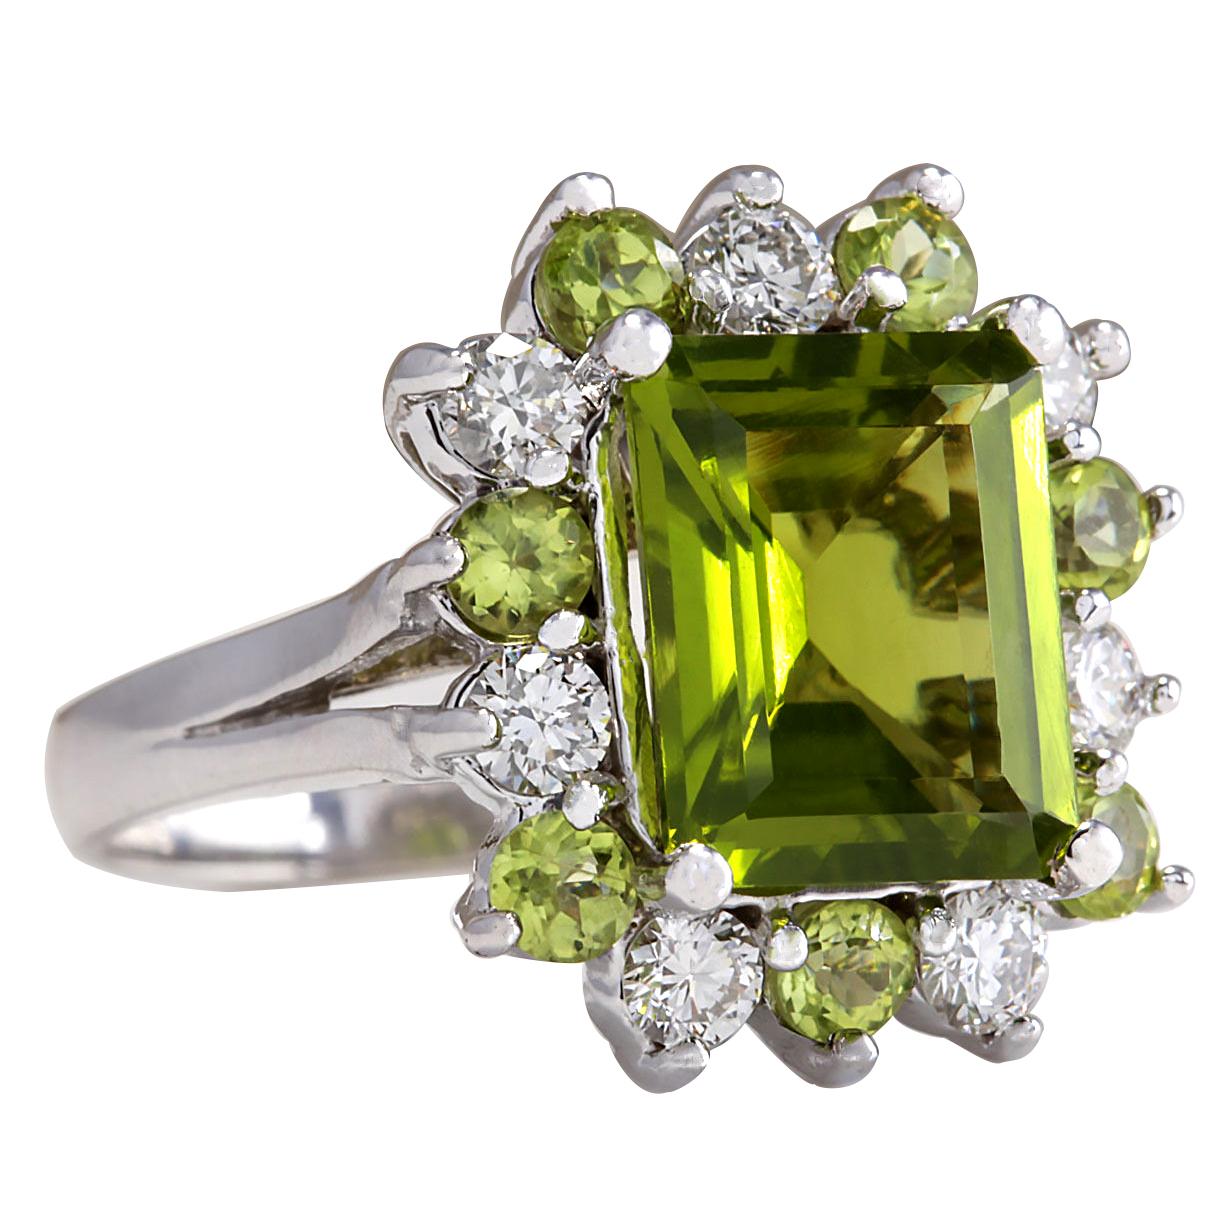 Lassen Sie sich von der natürlichen Schönheit unseres 4,97 Karat schweren Peridot-Diamantrings aus 14 Karat Weißgold verzaubern. Dieser mit viel Liebe zum Detail gefertigte Ring ist ein wahres Zeugnis für Luxus und Raffinesse.

Das Herzstück dieses